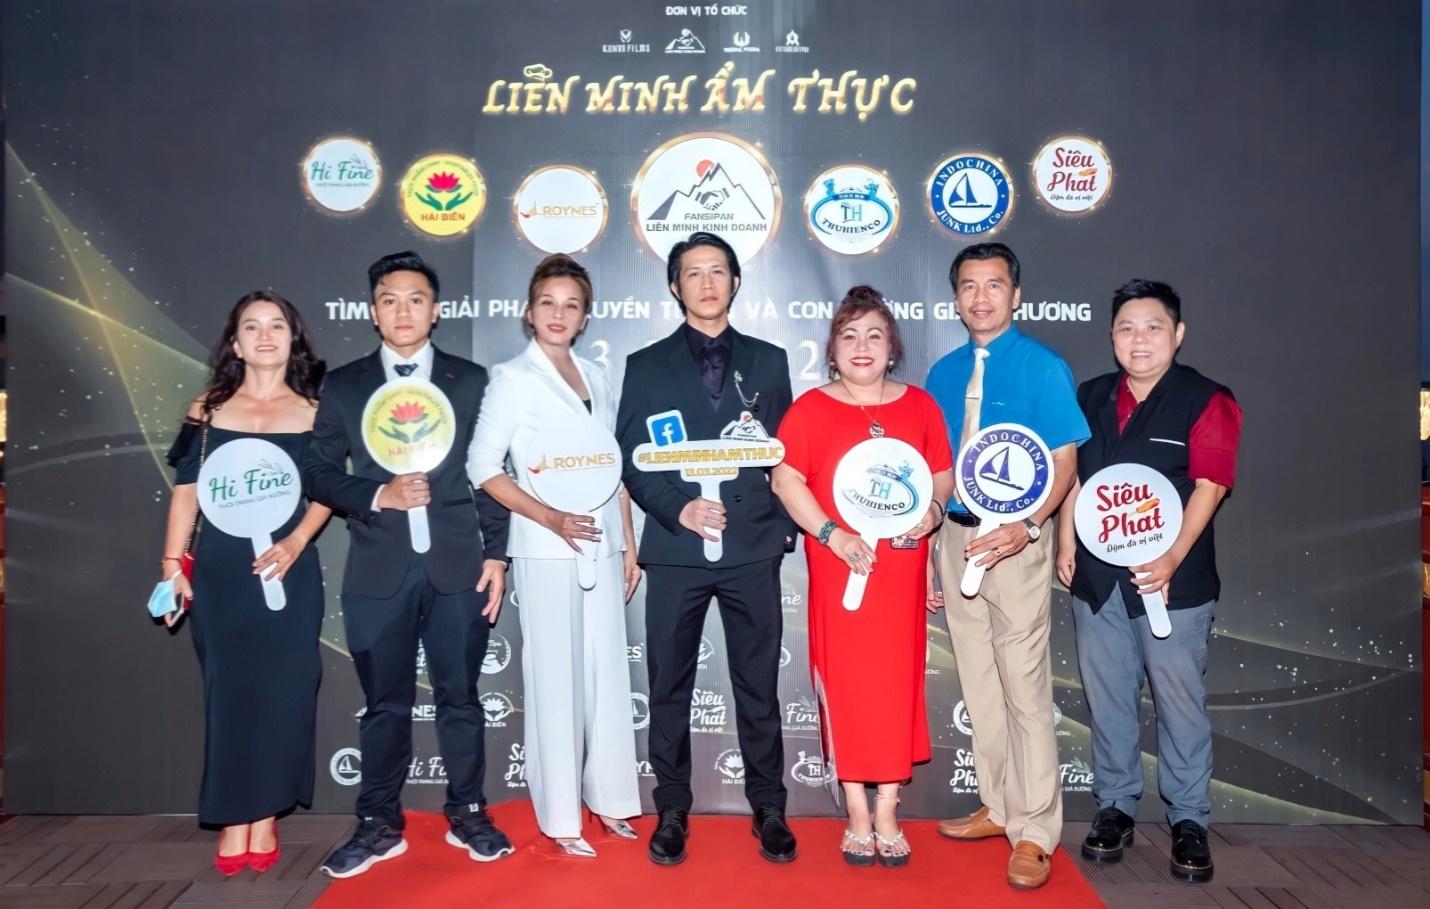 Diễn viên Nam Long - nam diễn viên chính series phim điện ảnh Phá Vây góp mặt tại sự kiện cùng các đối tác trong chương trình Liên Minh Ẩm Thực - Ảnh: LMKD